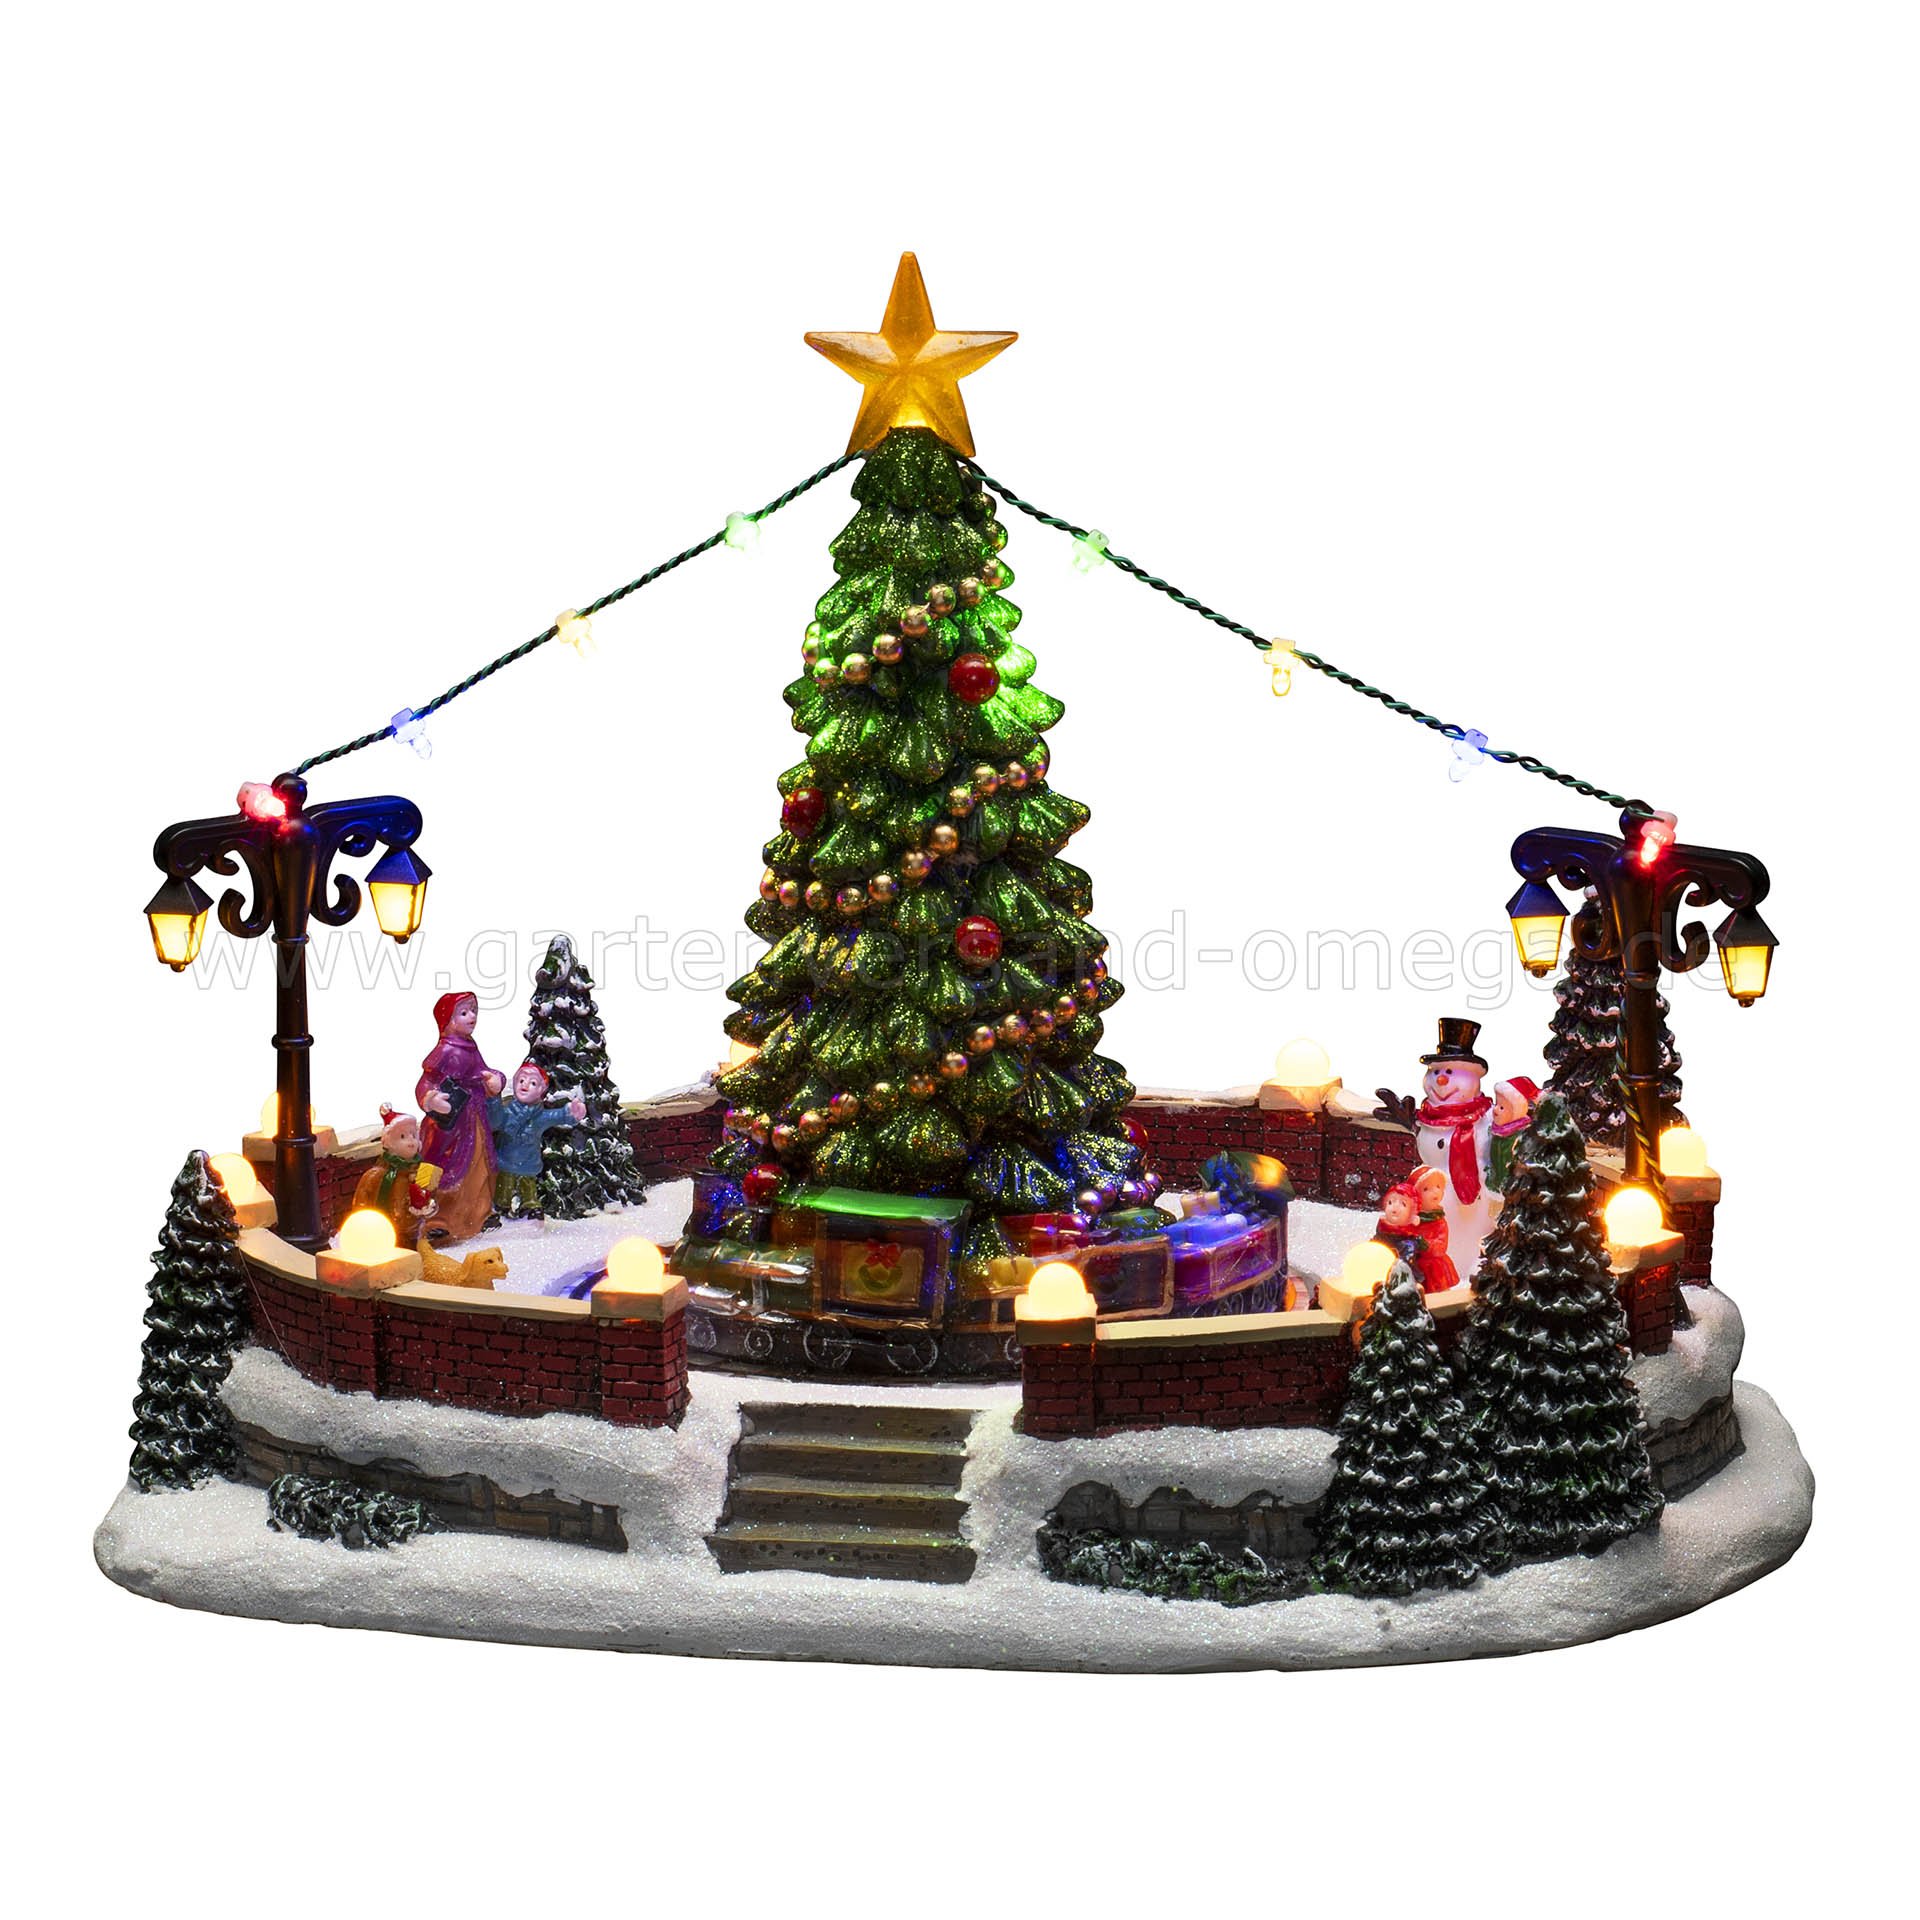 LED-Szenerie Dorfplatz - Weihnachtsdeko Fensterbrett, Weihnachten das animierte mit Weihnachten, Animation, Winterzauber und Dekoration für Beleuchtung, Schreibtischdeko Weihnachtsbeleuchtung Weihnachtsdeko, für Musik